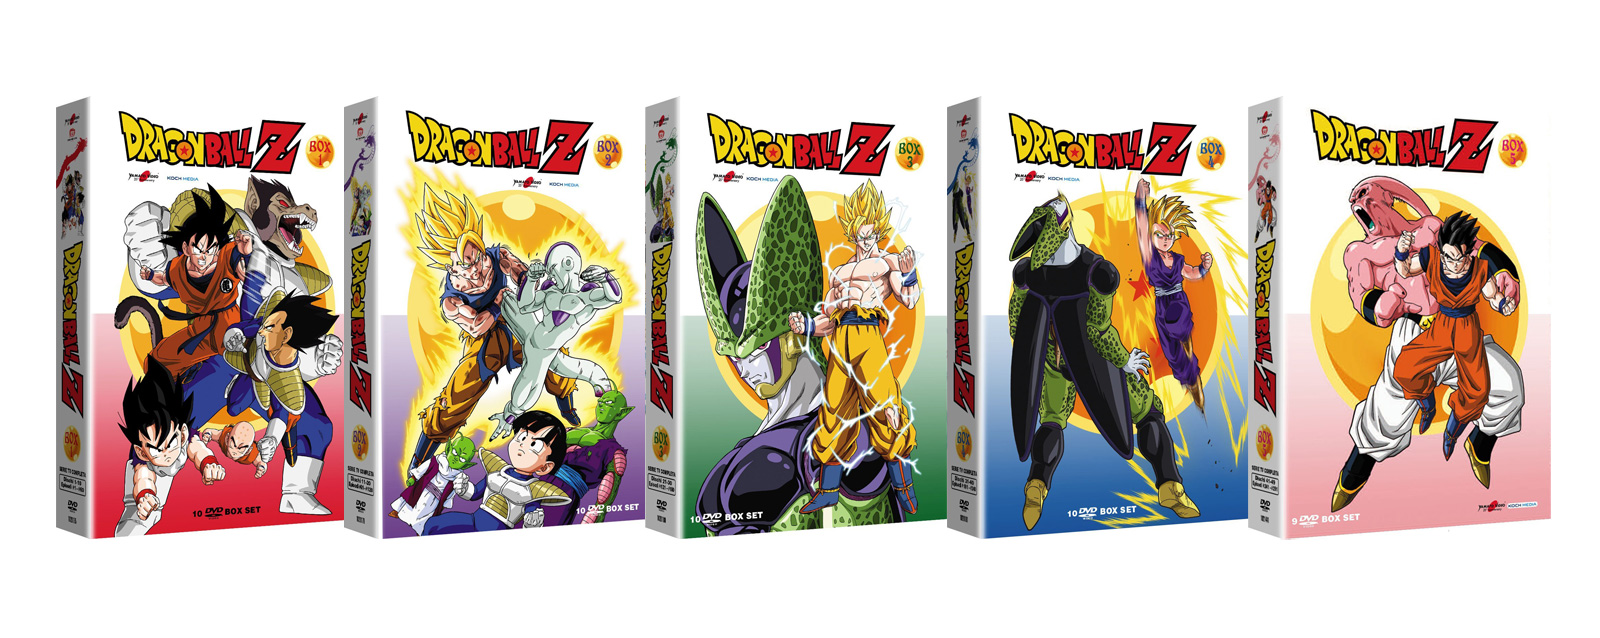 Dragon Ball Z in DVD